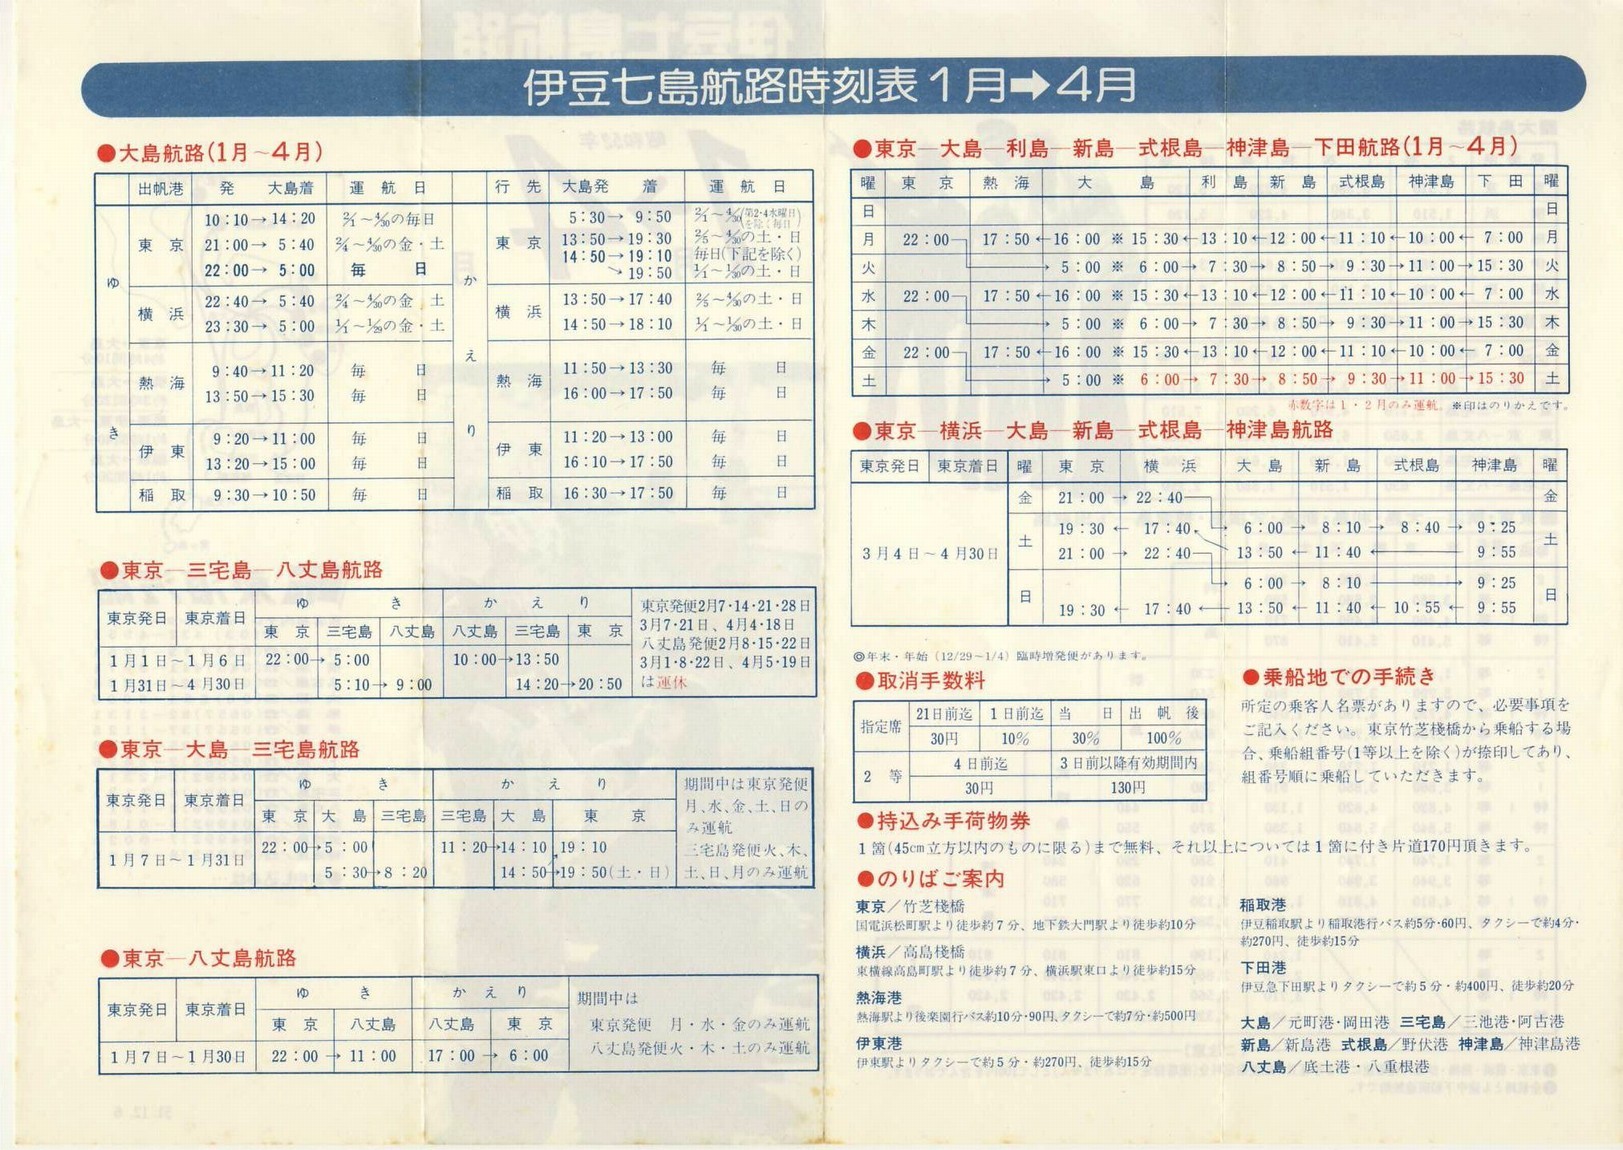 1976-12-06発行_東海汽船_伊豆七島航路時刻表裏面